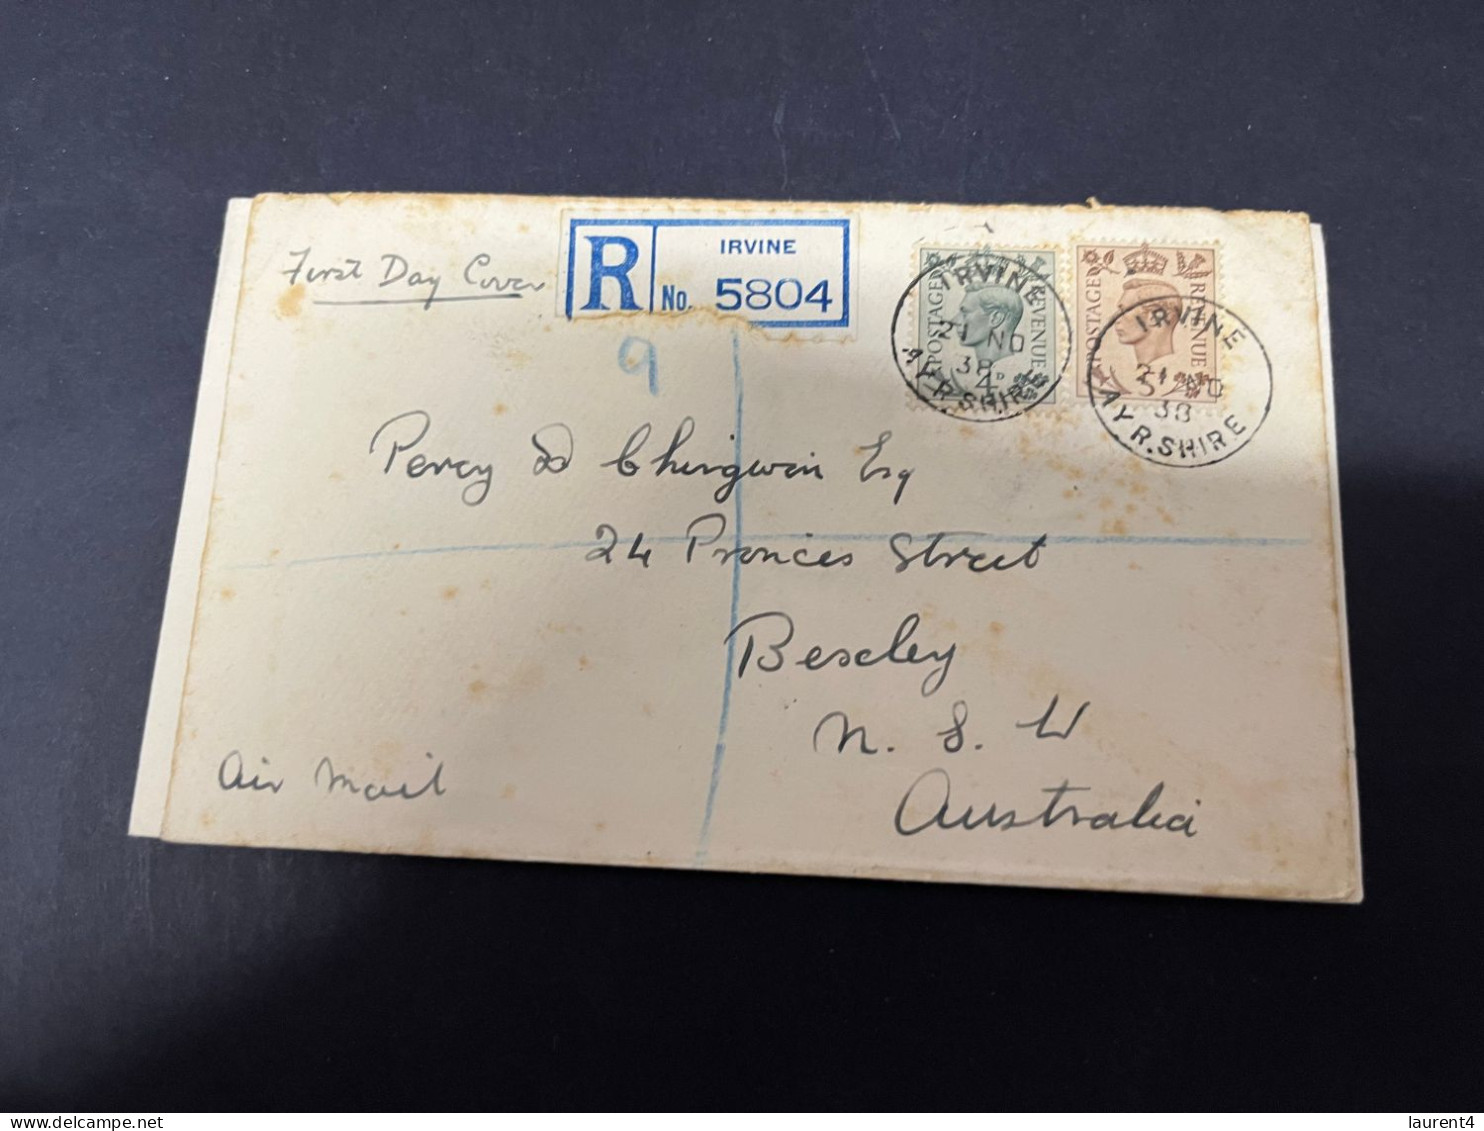 7-11-2023 (1 V 34) UK (registered) Letter Posted To Australia (1938) (condition As Seen On Scan) - Brieven En Documenten